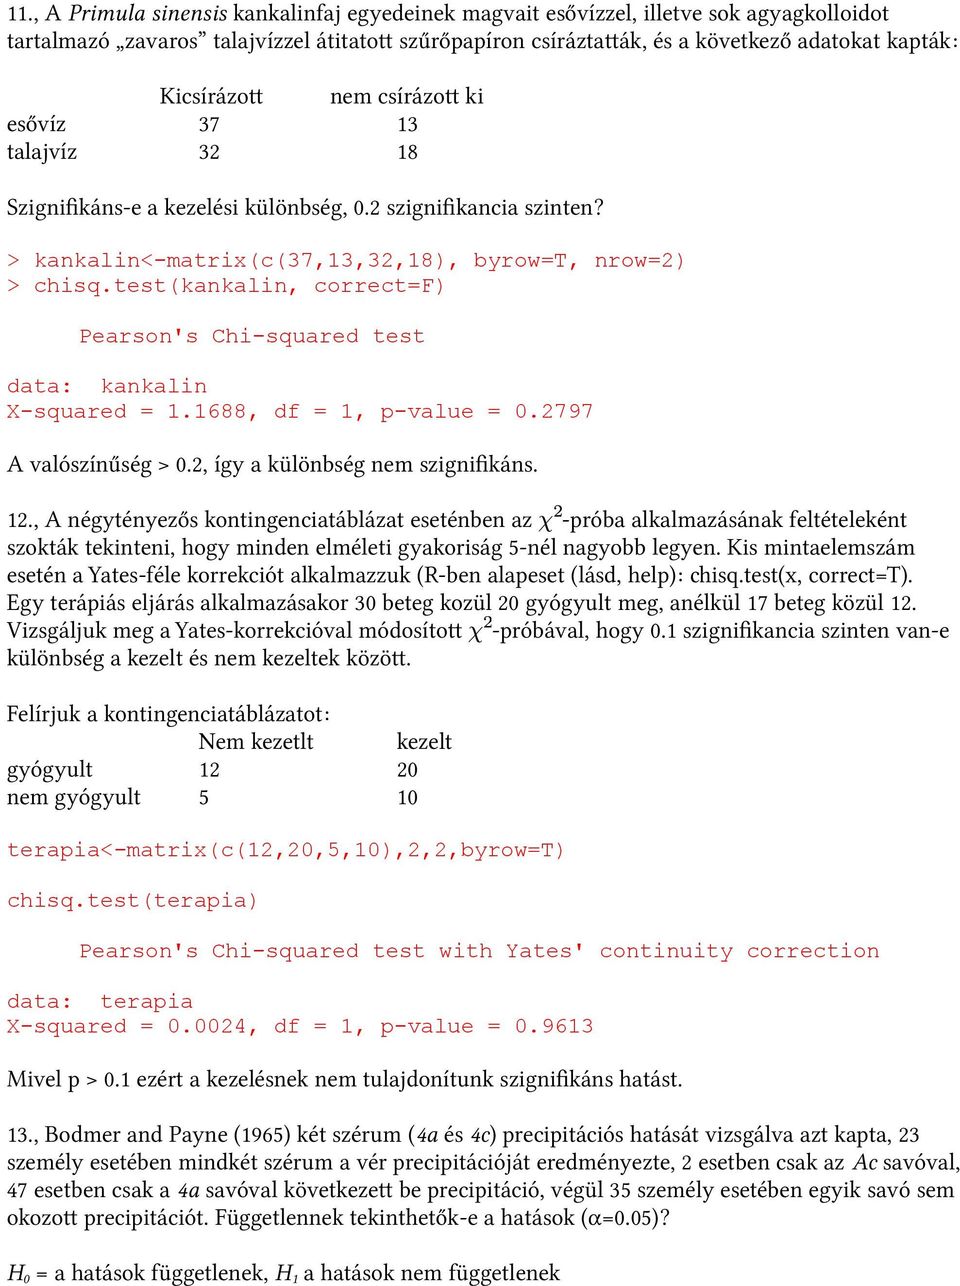 test(kankalin, correct=f) data: kankalin X-squared = 1.1688, df = 1, p-value = 0.2797 A valószínűség > 0.2, így a különbség nem szignifkáns. 12.